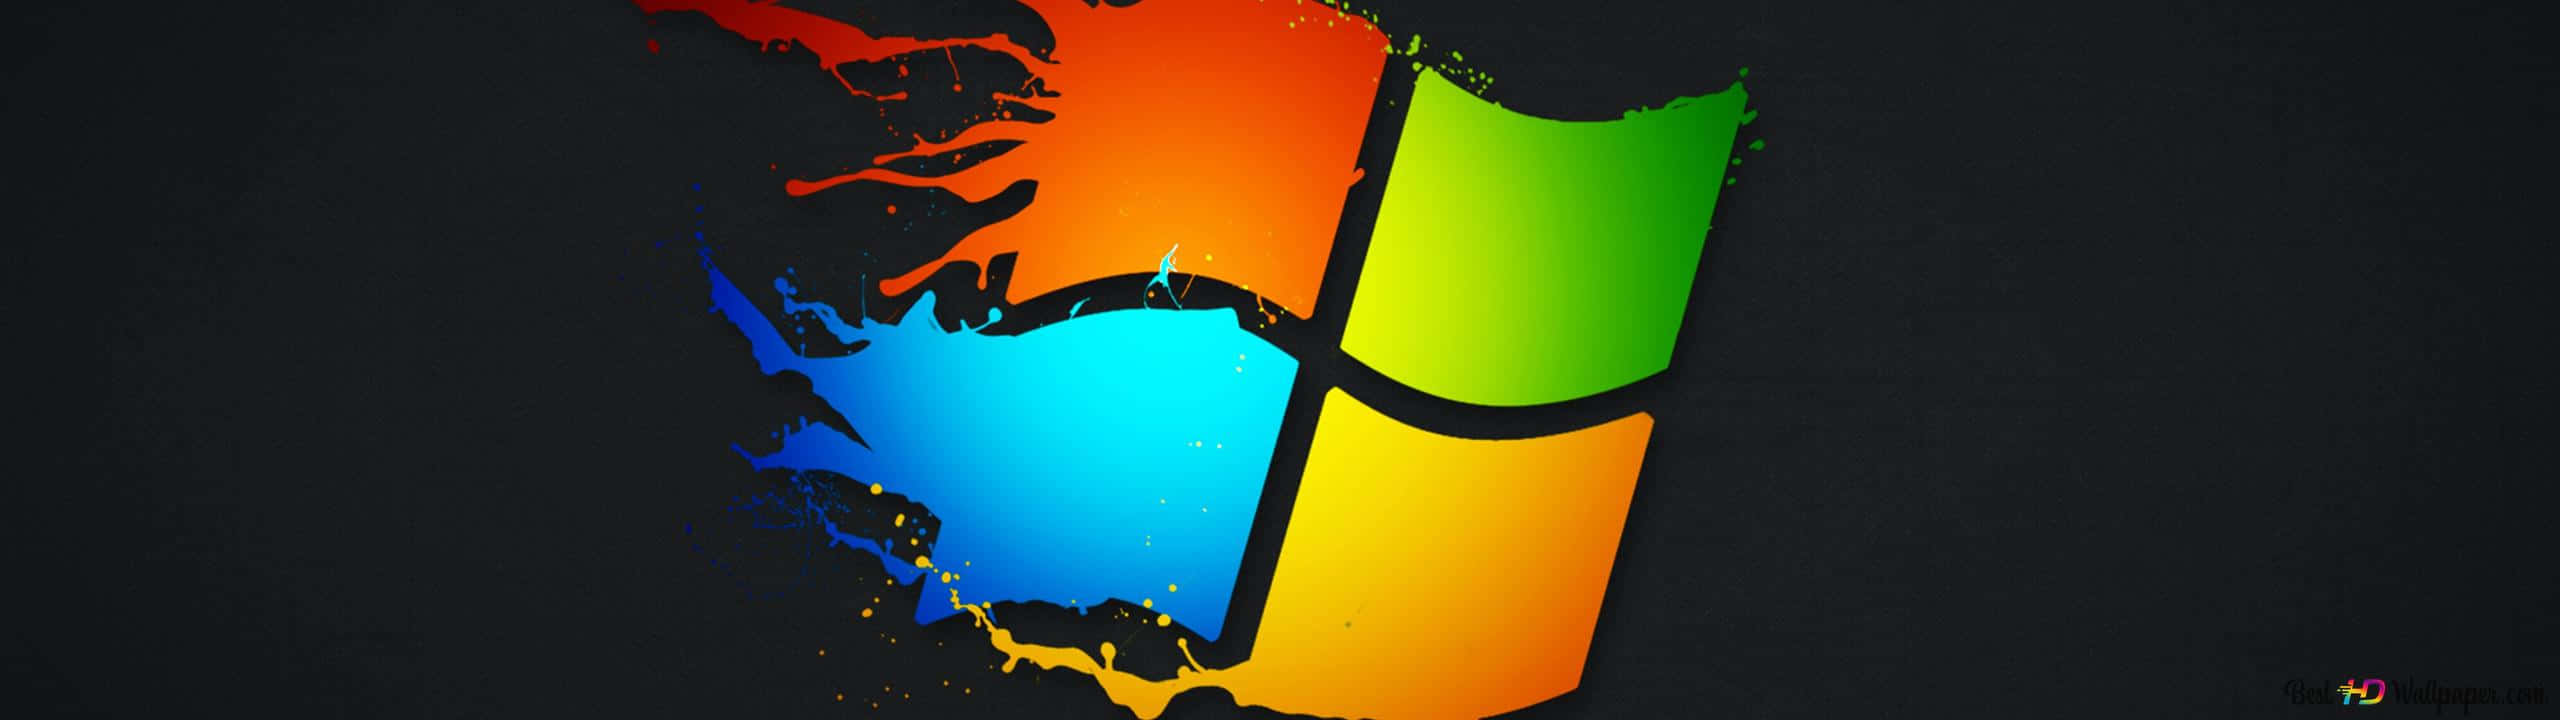 Microsoftwindows Xp-logo Wallpaper